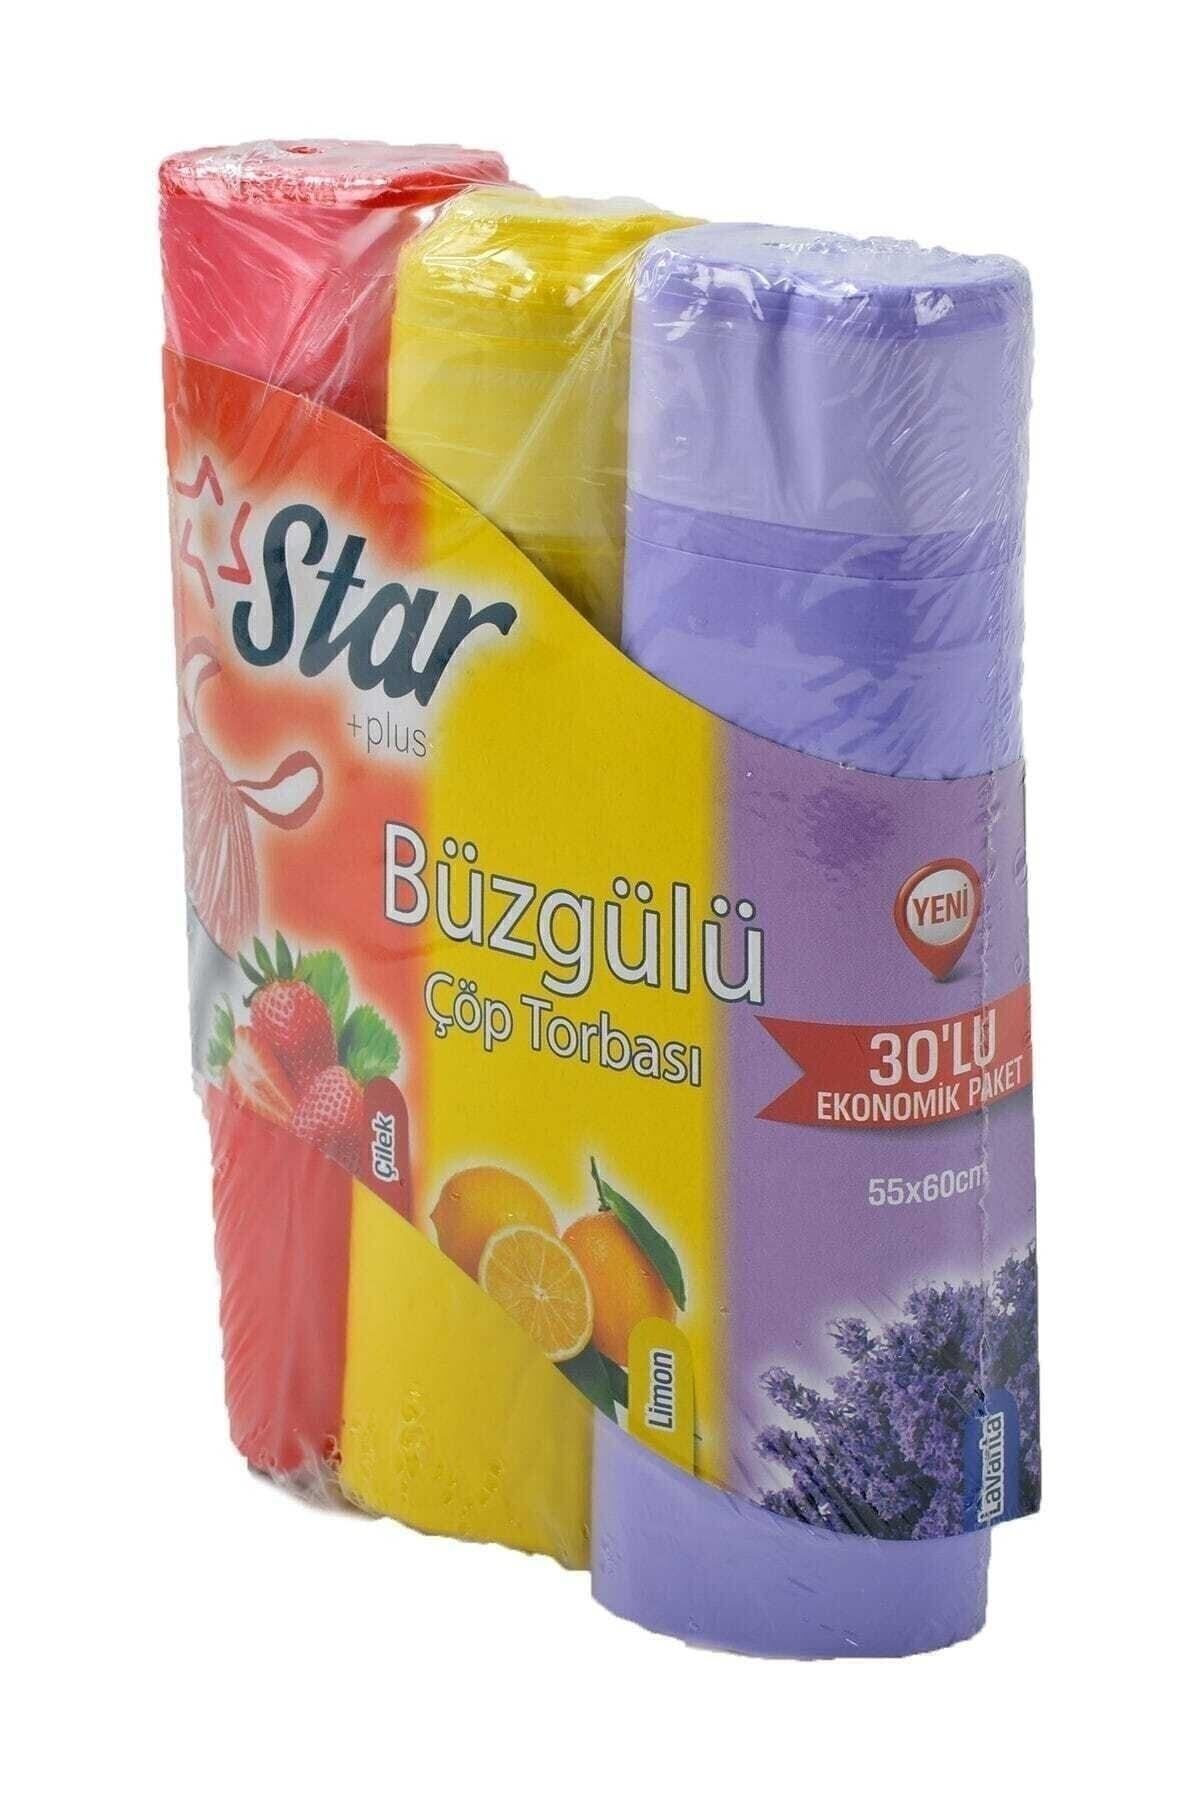 Star Plus Büzgülü Çöp Torbası 55x60 Cm 3' Lü Eko Paket Lavanta-çilek-limon Kokulu Çöp Poşeti